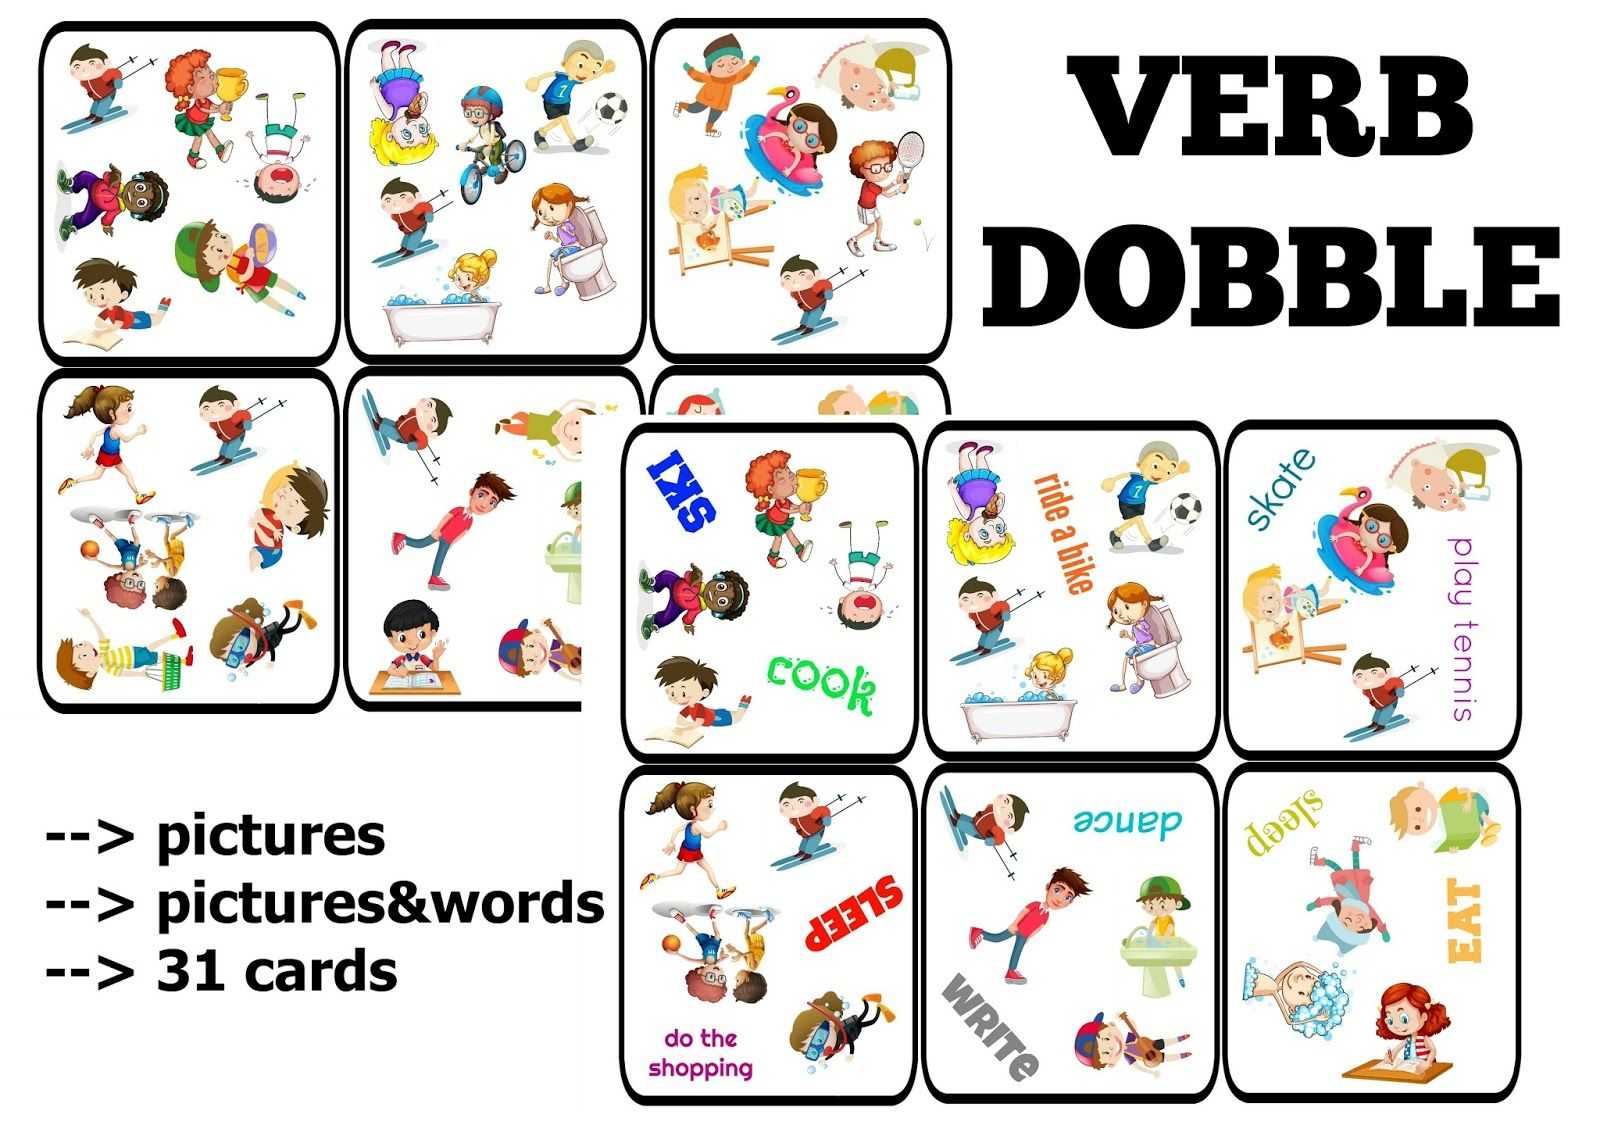 7 игр с карточками: обучаем английскому и развиваем ребенка